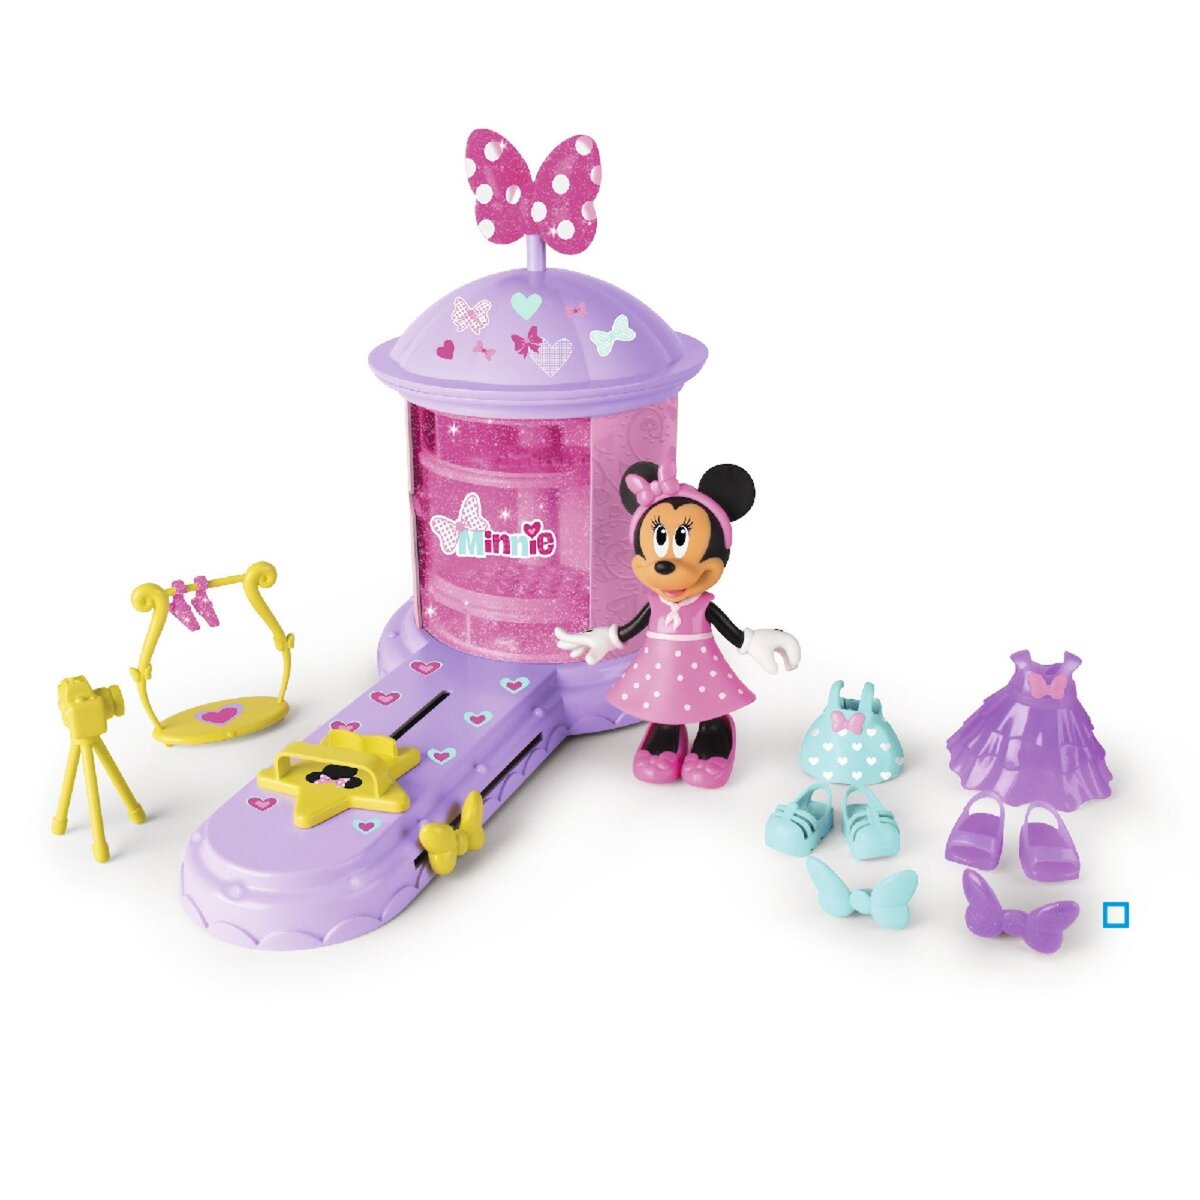 IMC Toys Minnie - Maison de Minnie - poupee